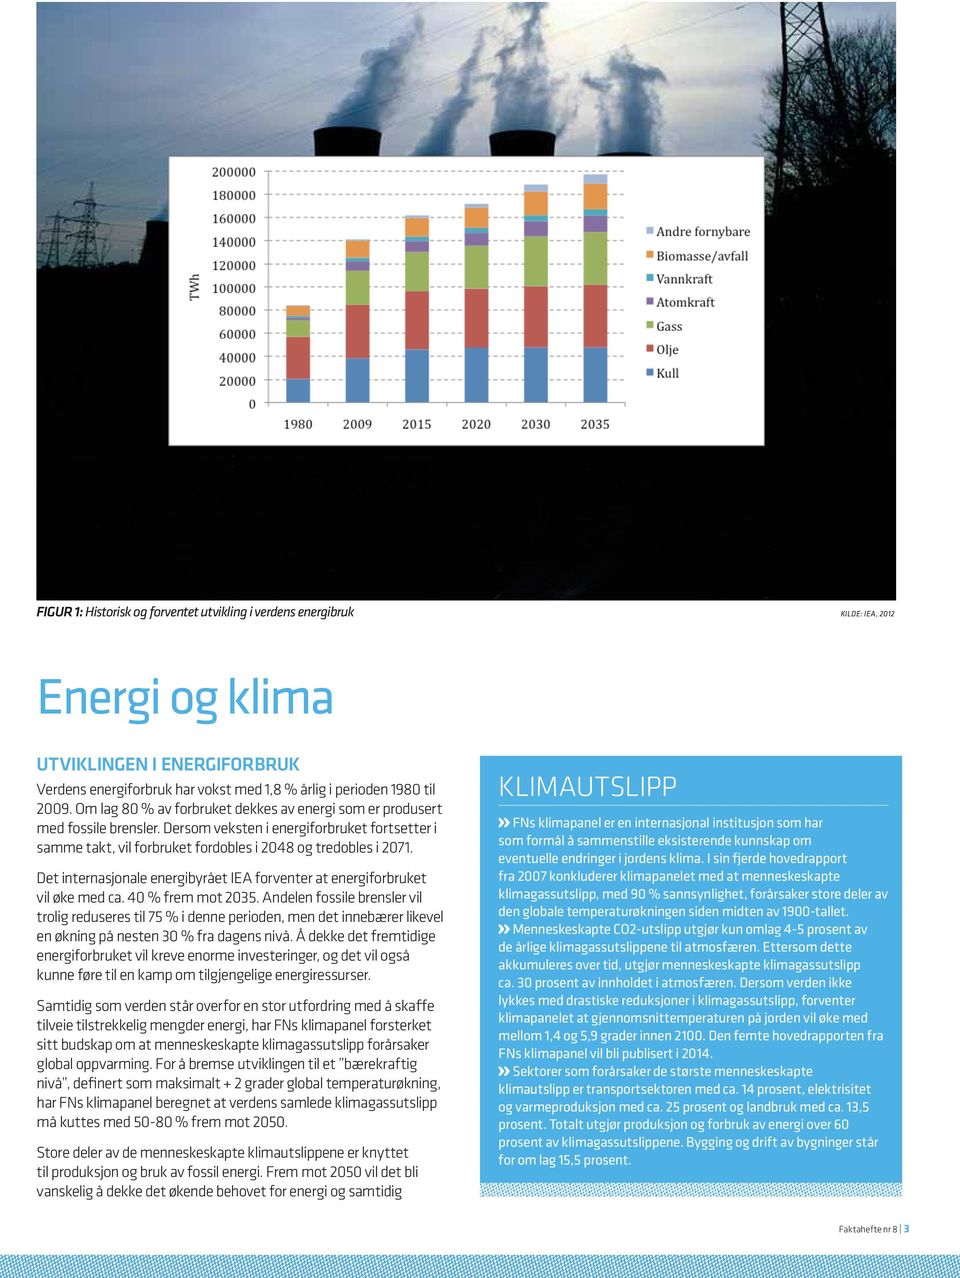 Det internasjonale energibyrået IEA forventer at energiforbruket vil øke med ca. 40 % frem mot 2035.